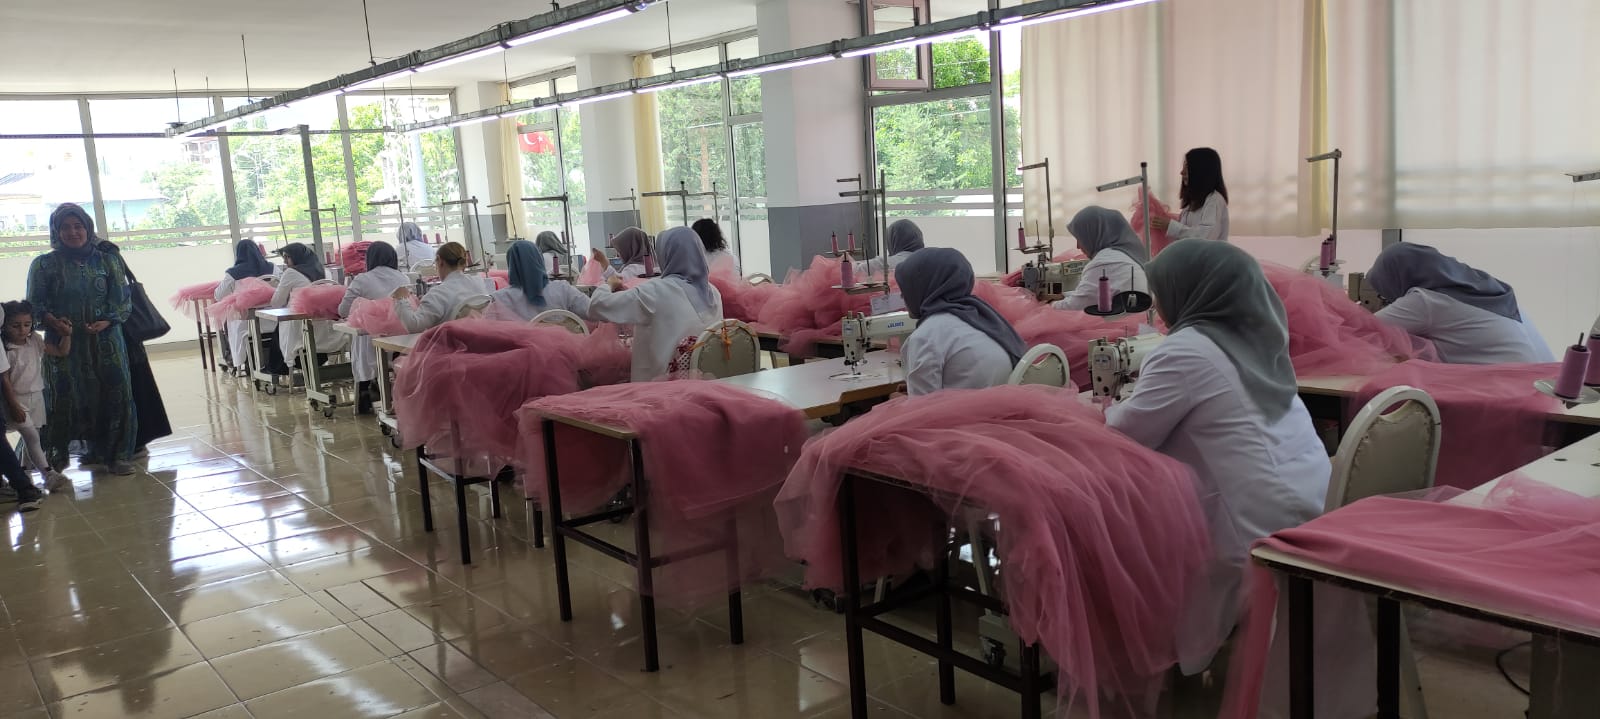 Kağızman’da açılan tekstil atölyesi 350 kişiye istihdam kapısı olacak